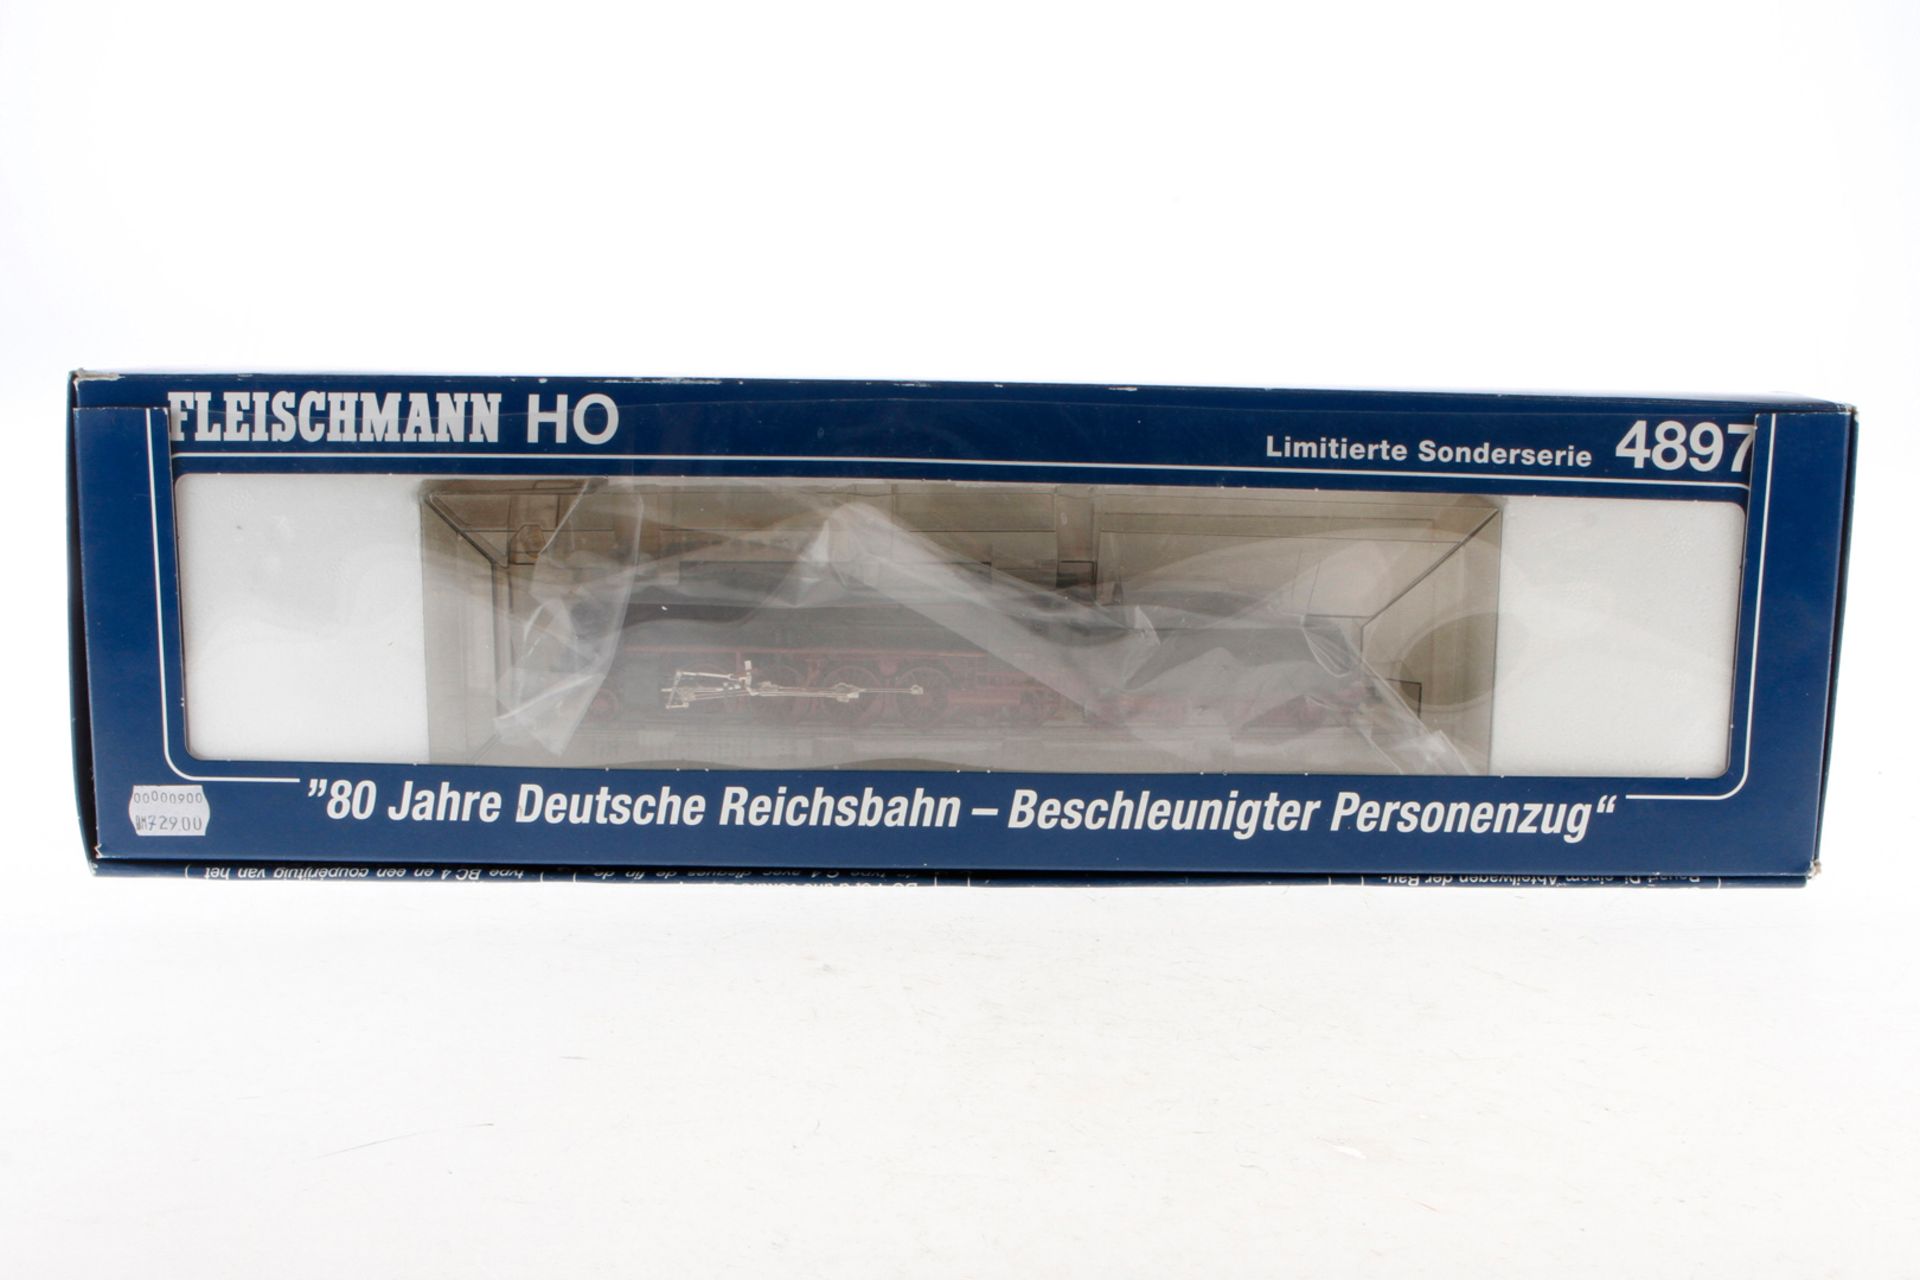 Fleischmann 1-D-1 Schlepptenderlok ”39 105”, Spur H0, grün/schwarz, Alterungsspuren, im Eigenbau-